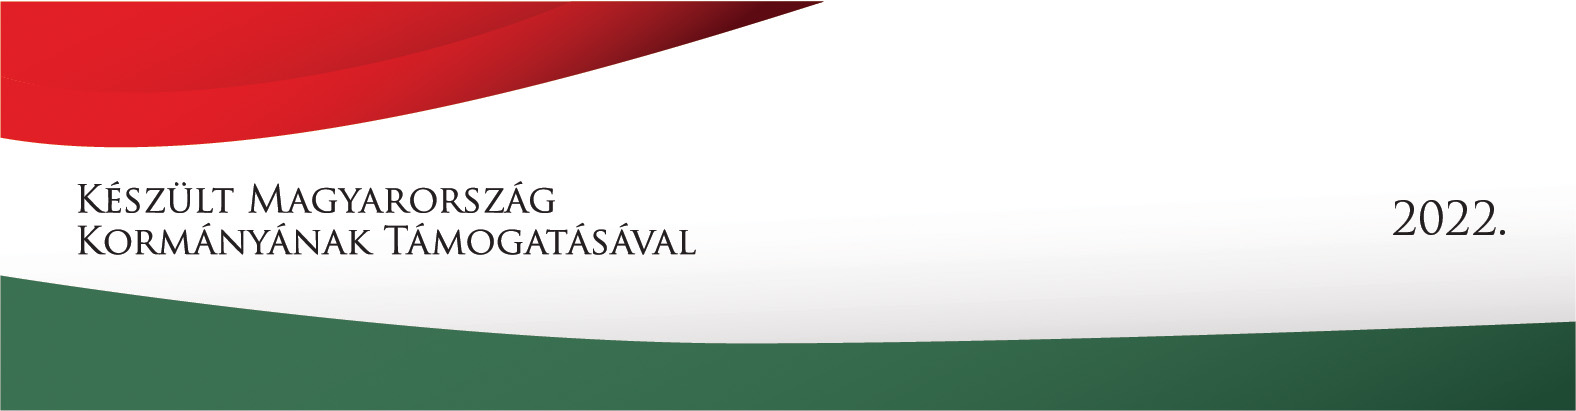 készült magyarország kormányának támogatásával 2022